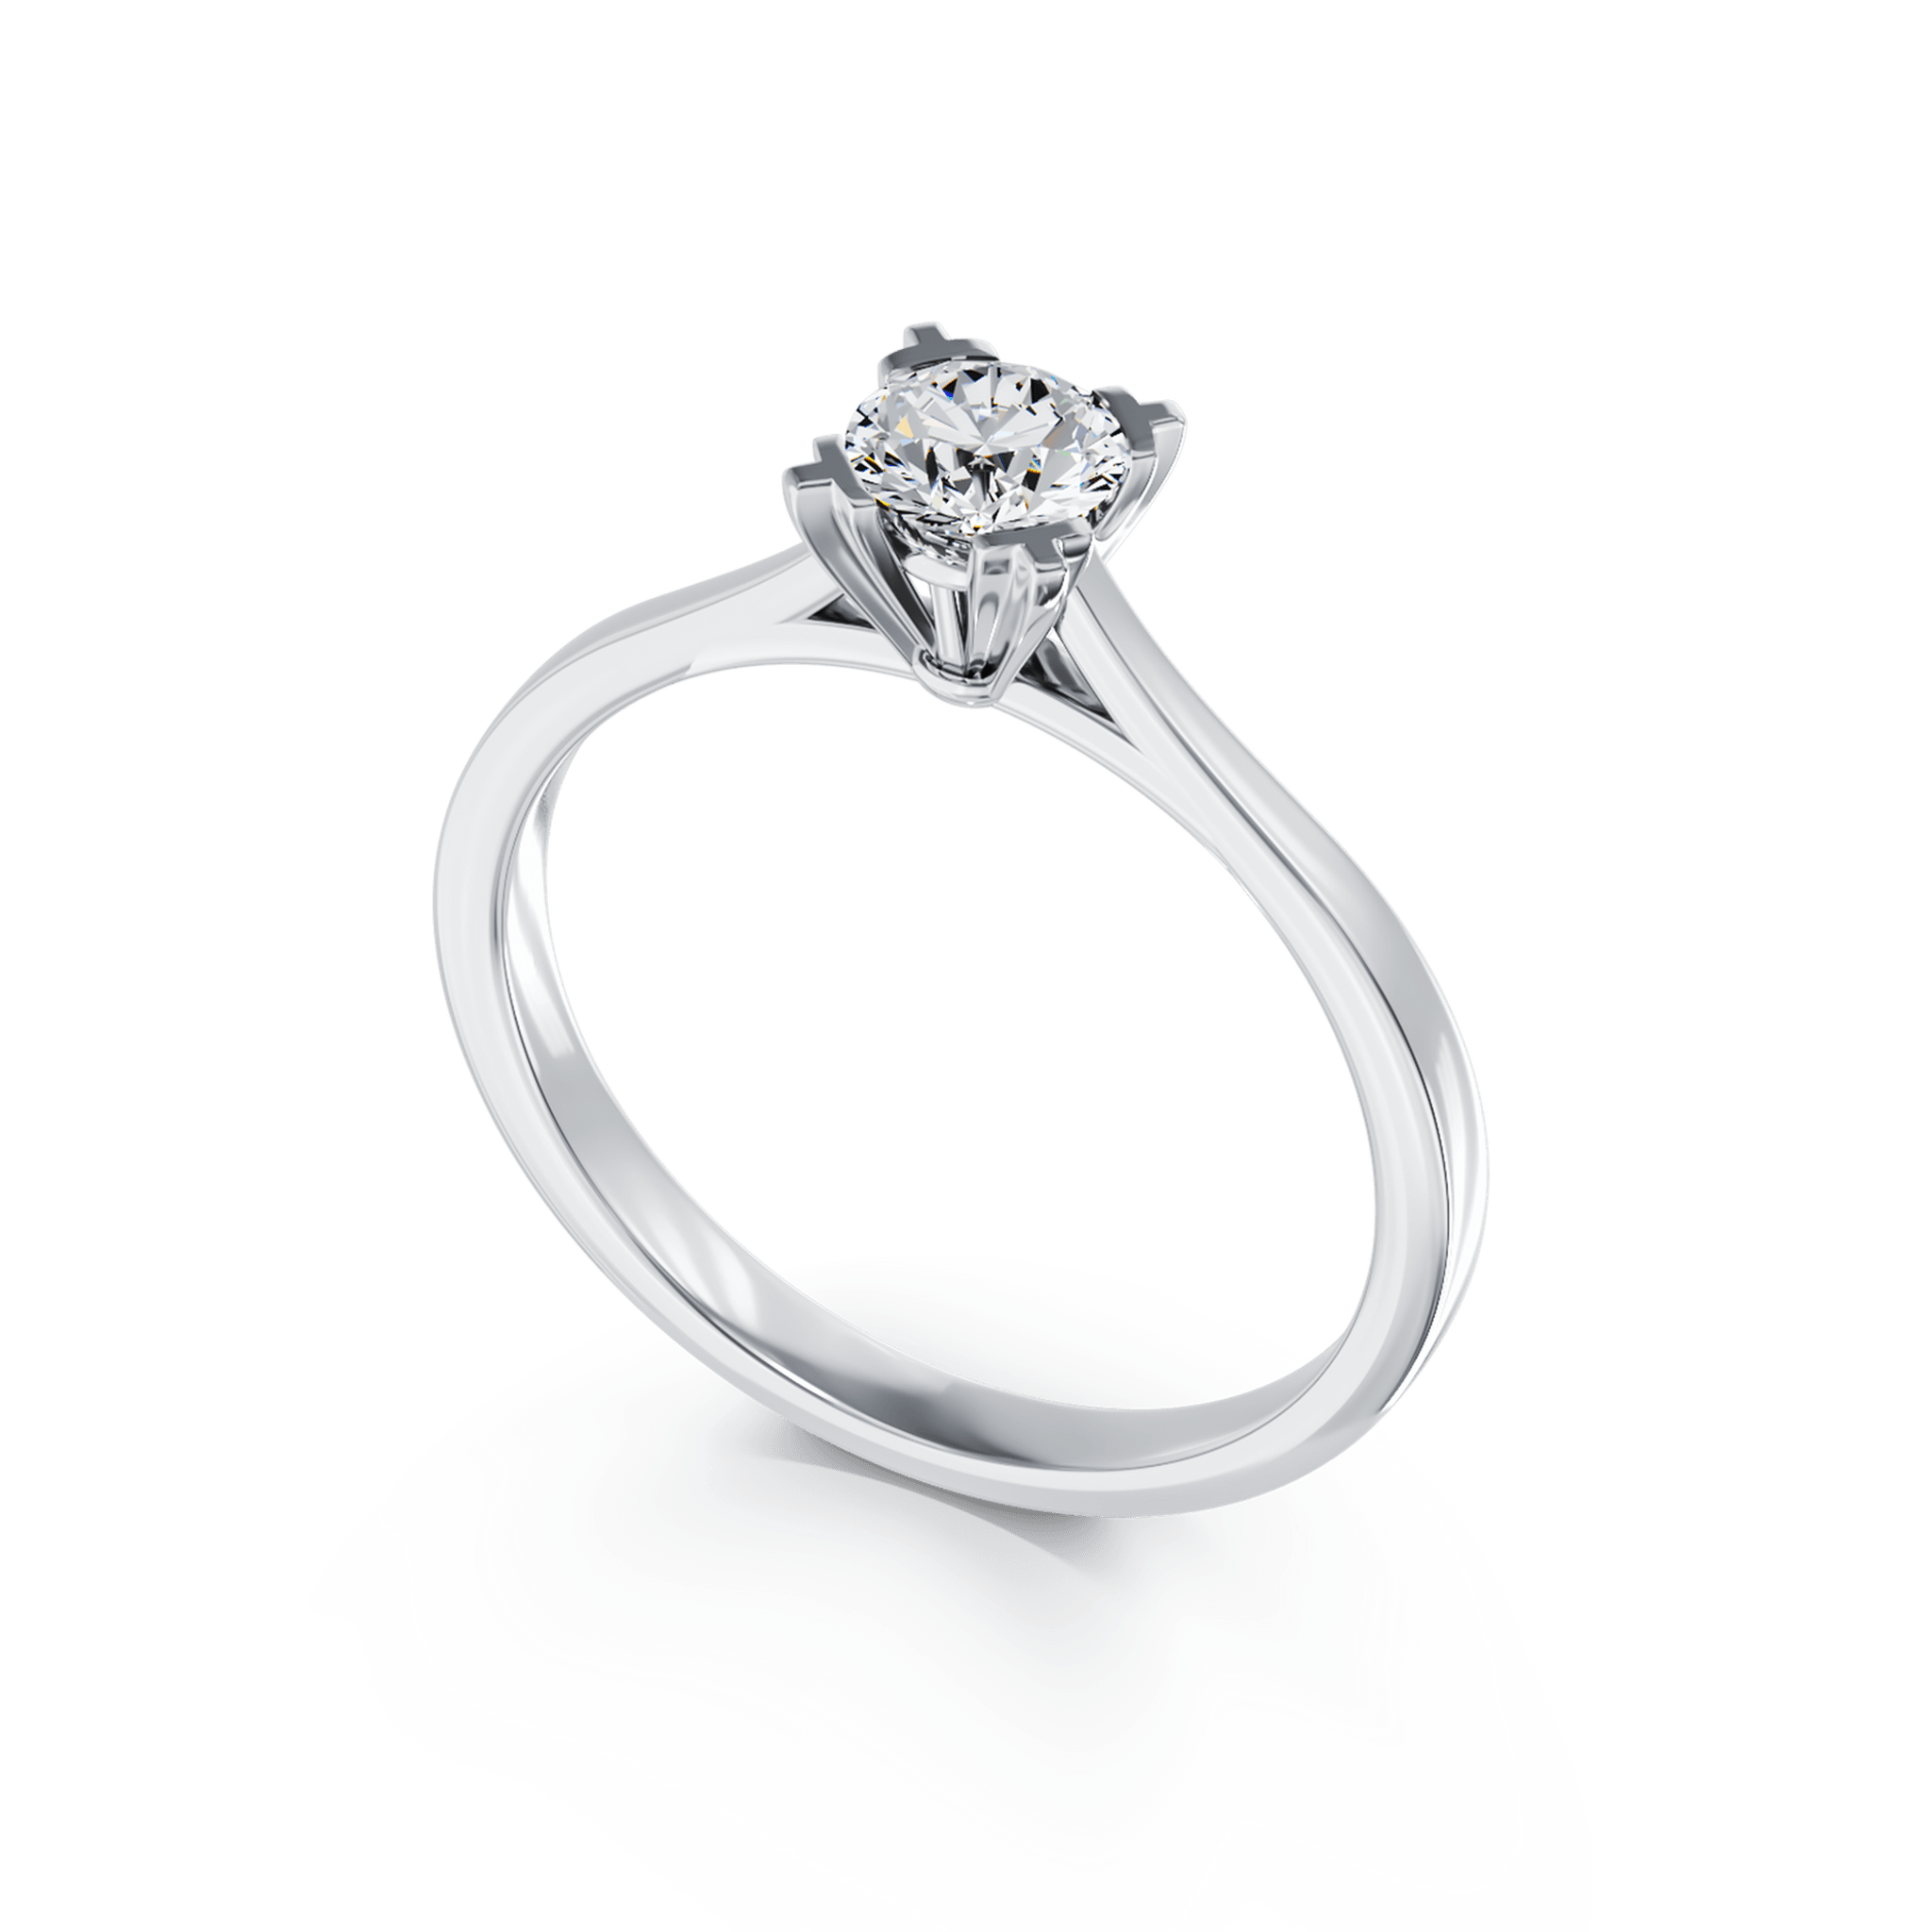 Inel de logodna din aur alb de 18K cu un diamant solitaire de 0.16ct